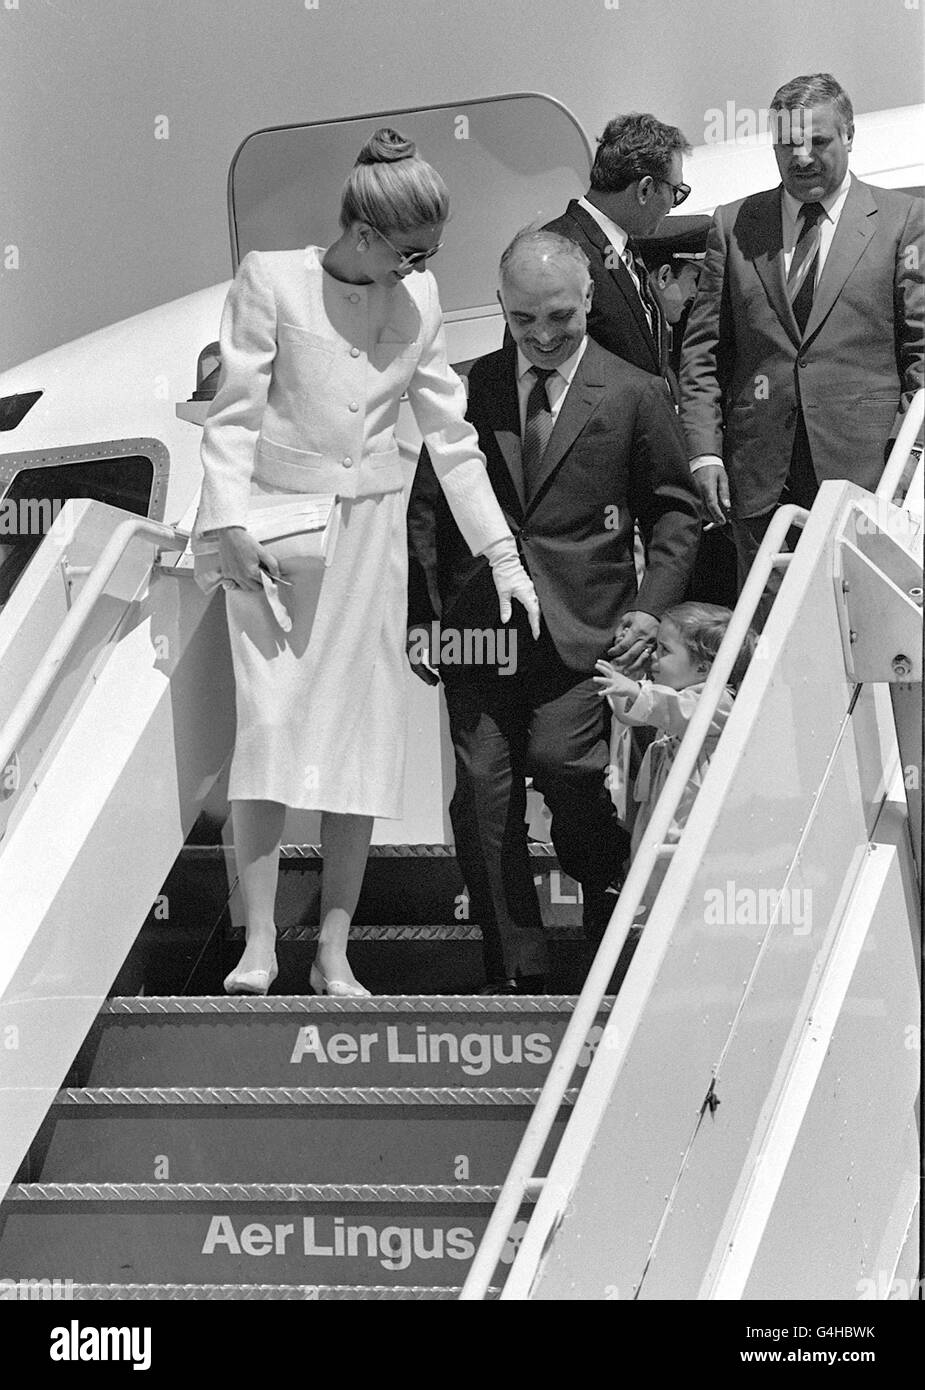 Il re Hussein di Giordania, sua moglie la regina Noor e la loro figlia di due anni la principessa Iman, fanno il loro modo giù i gradini dell'aeroplano all'arrivo all'aeroporto di Heathrow, dopo aver tagliato il loro viaggio in America. Il re era a Londra per continuare i test medici. * Un portavoce nega i resoconti di un complotto di colpo di stato. *5/2/99: Re Hussein gravemente ammalato a causa dell'arrivo in Giordania dopo un trapianto di midollo osseo fallito in un ospedale degli Stati Uniti. Foto Stock